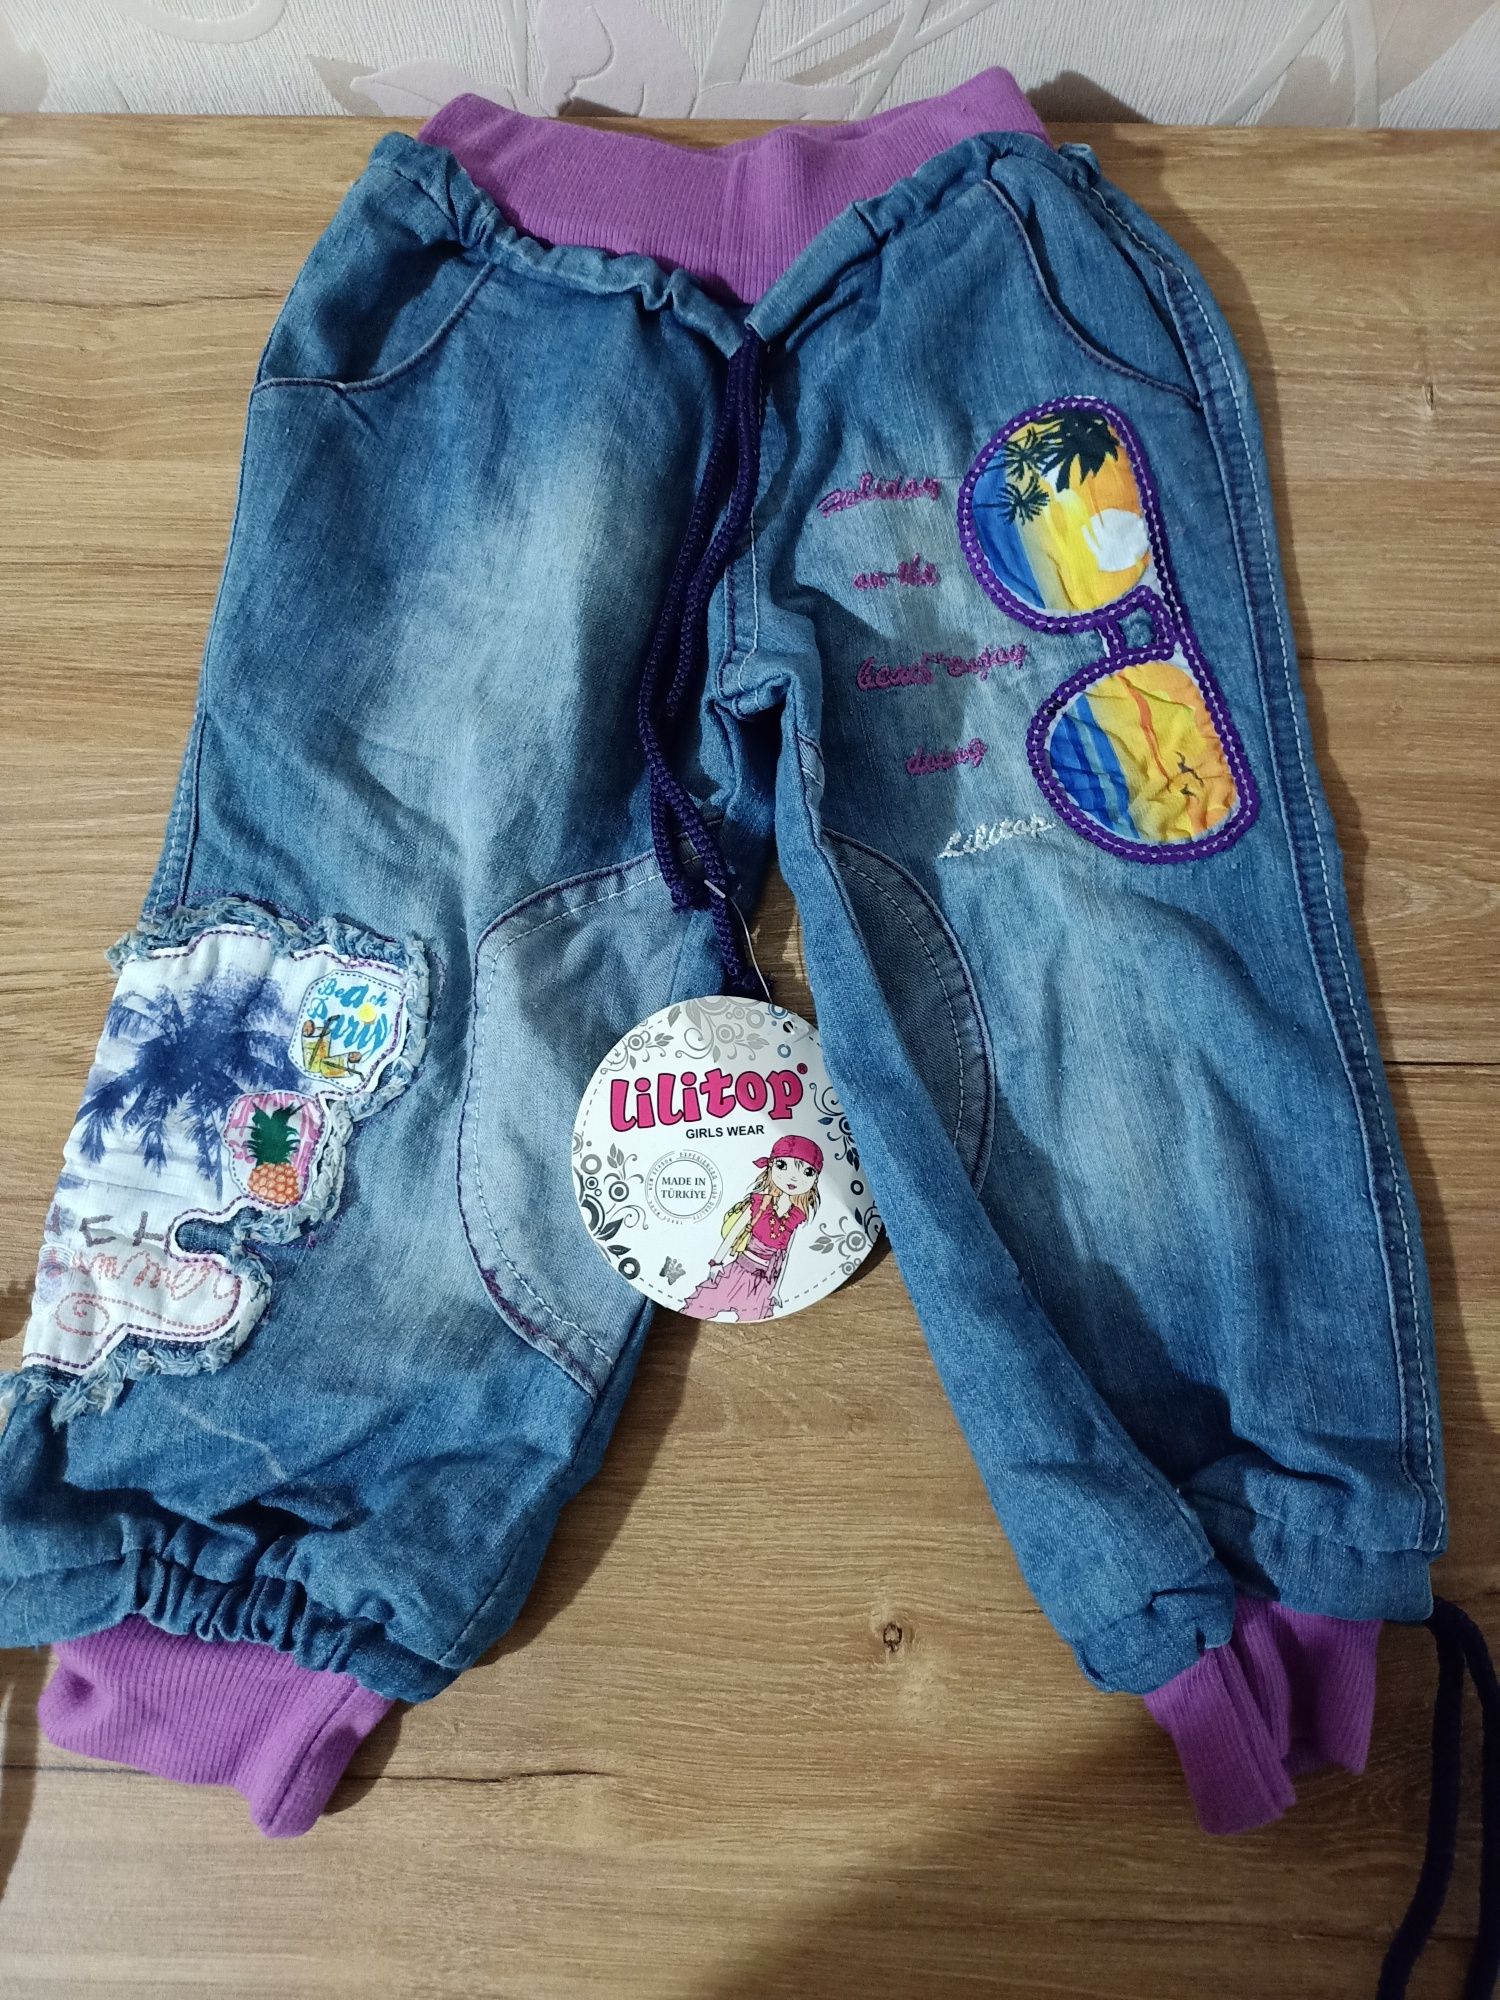 Новые детские вещи для девочки бриджи шорты куртка кофты туника джинсы